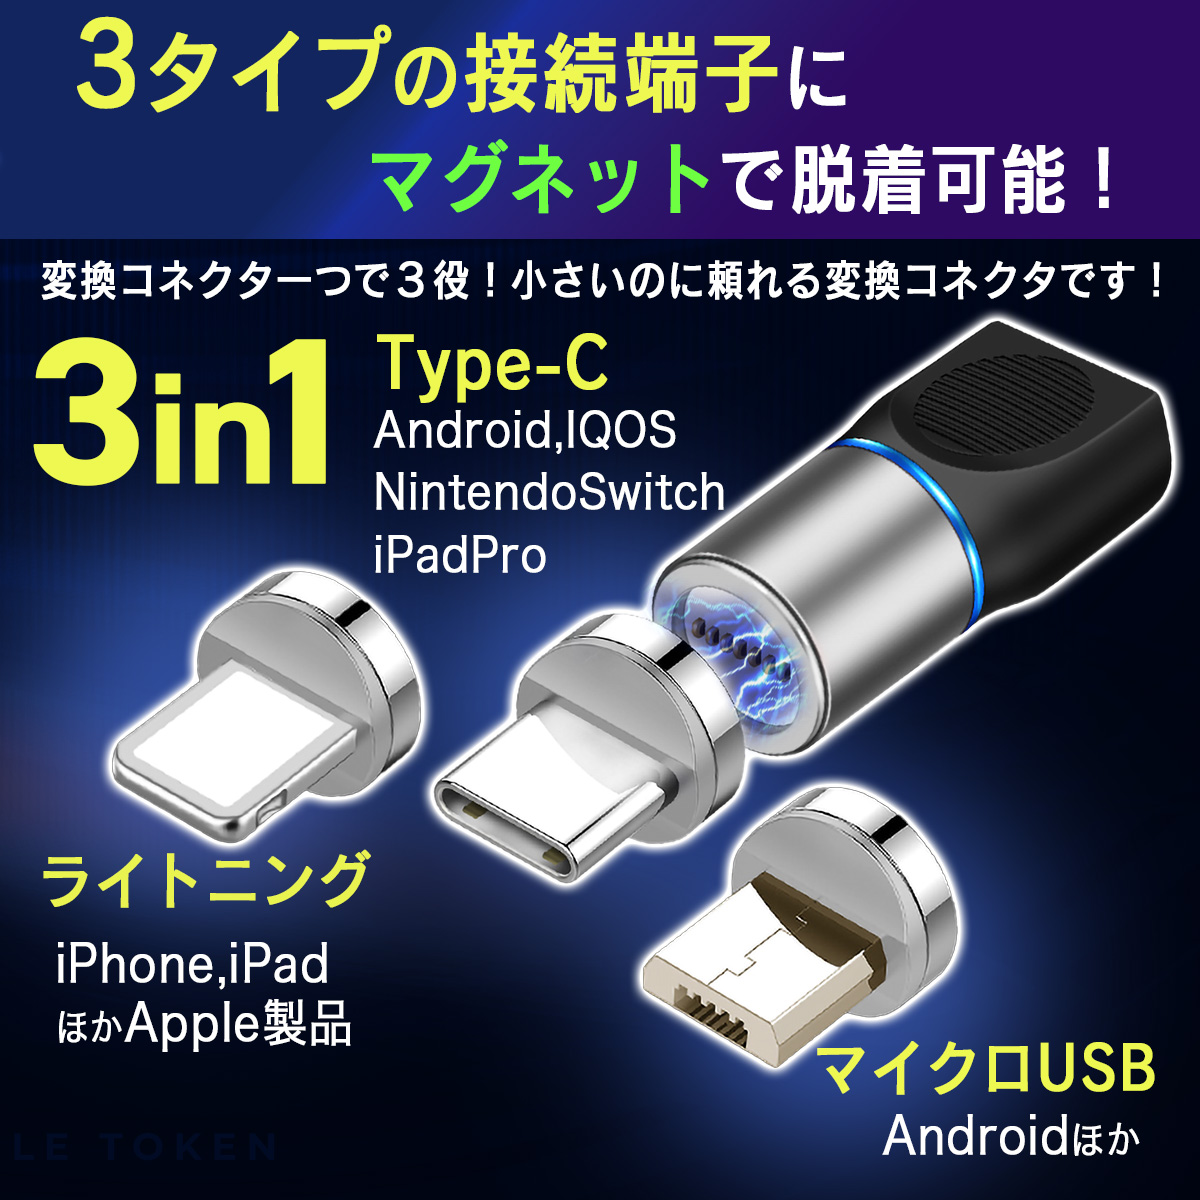 usb変換アダプター iPhone typec USB変換 変換 3in1 ライトニング タイプC microUSB マグネット lightning  android データ転送 USBC usbケーブル 充電 簡単着脱 :ws73:World Select 通販 